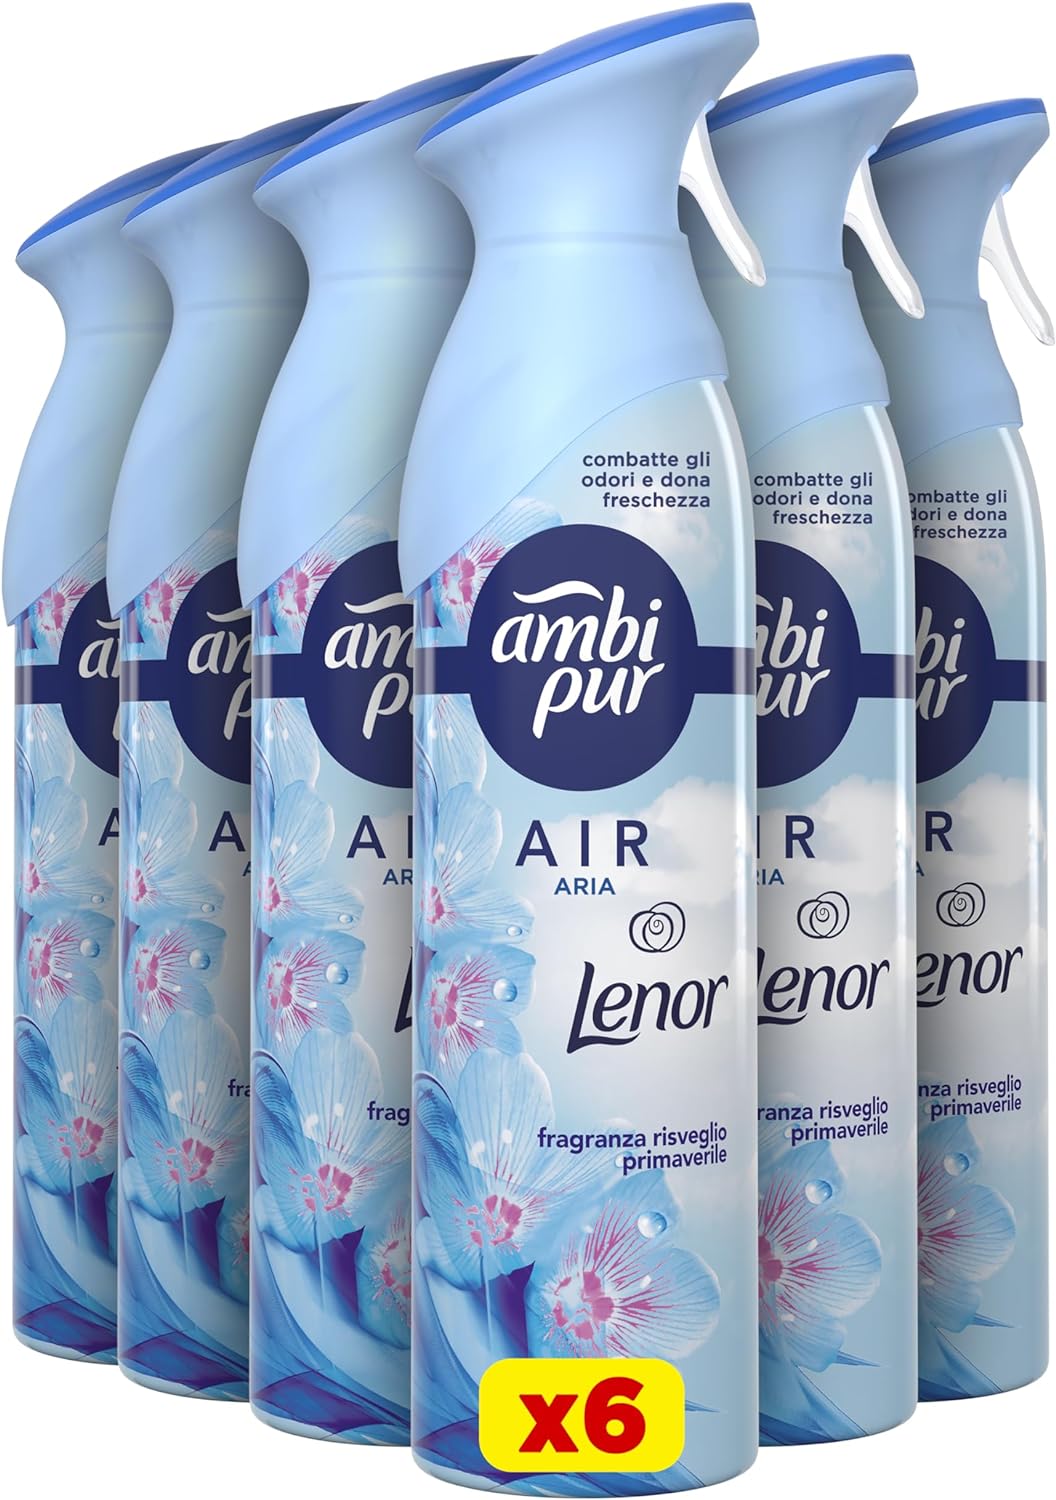 Ambi Pur Air 6 Deodoranti Spray da 300ml Fragranza Lenor Risveglio Primaverile.